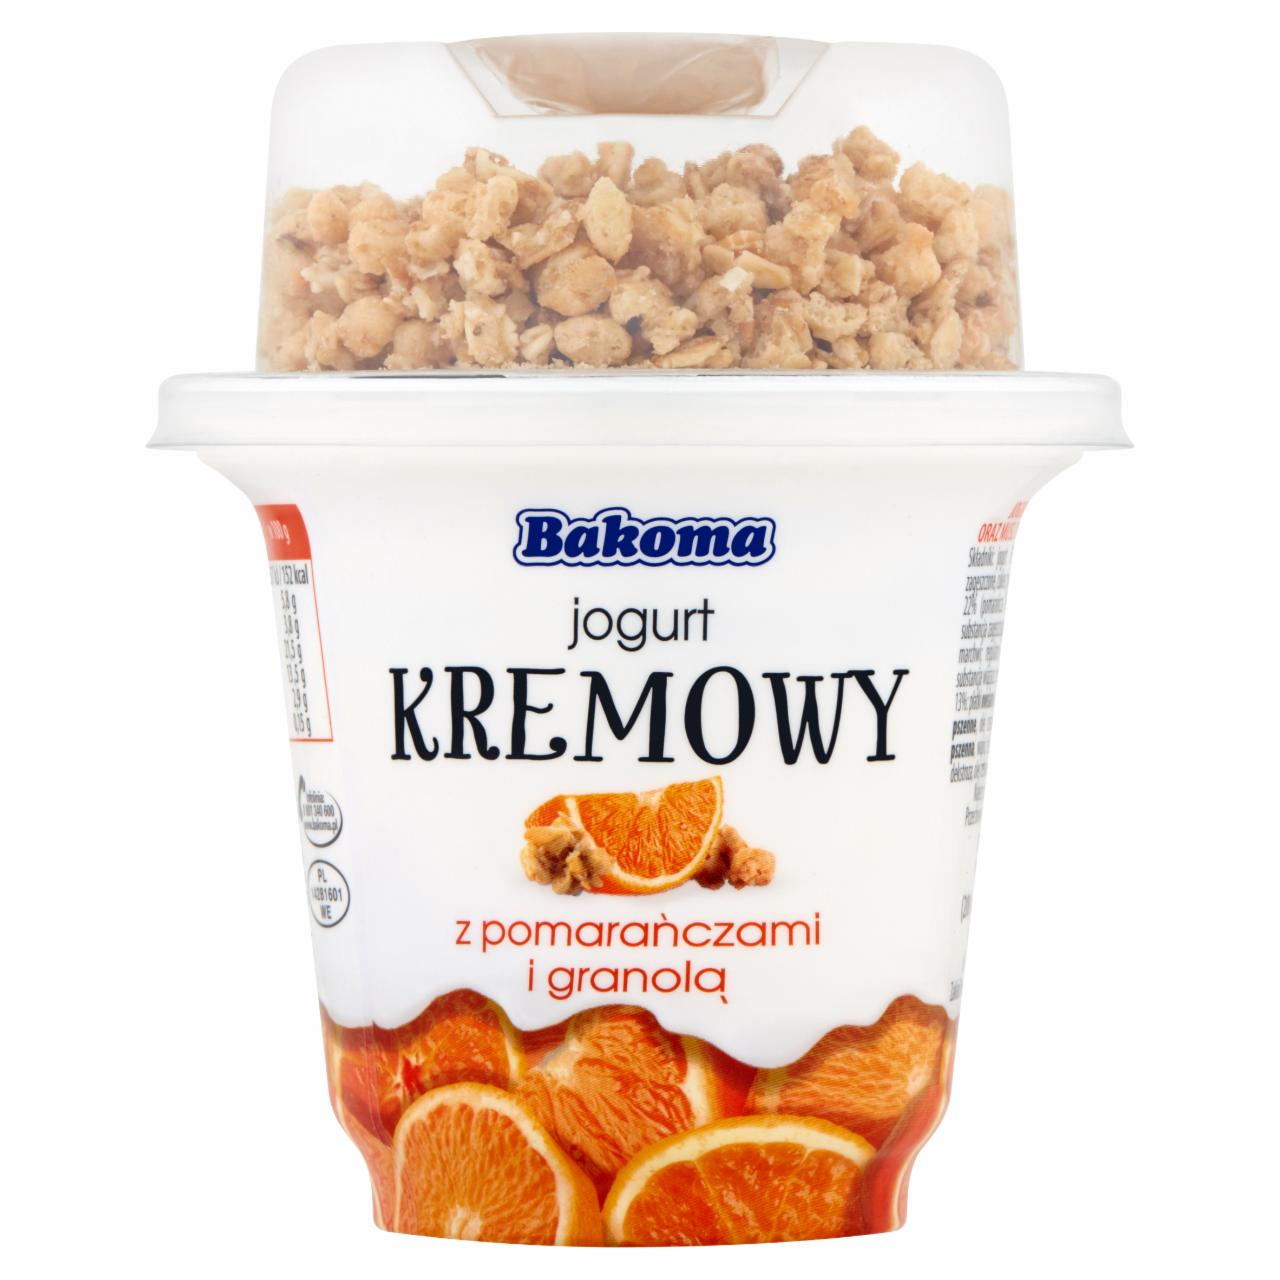 Zdjęcia - Bakoma Jogurt kremowy z pomarańczą i granolą 230 g